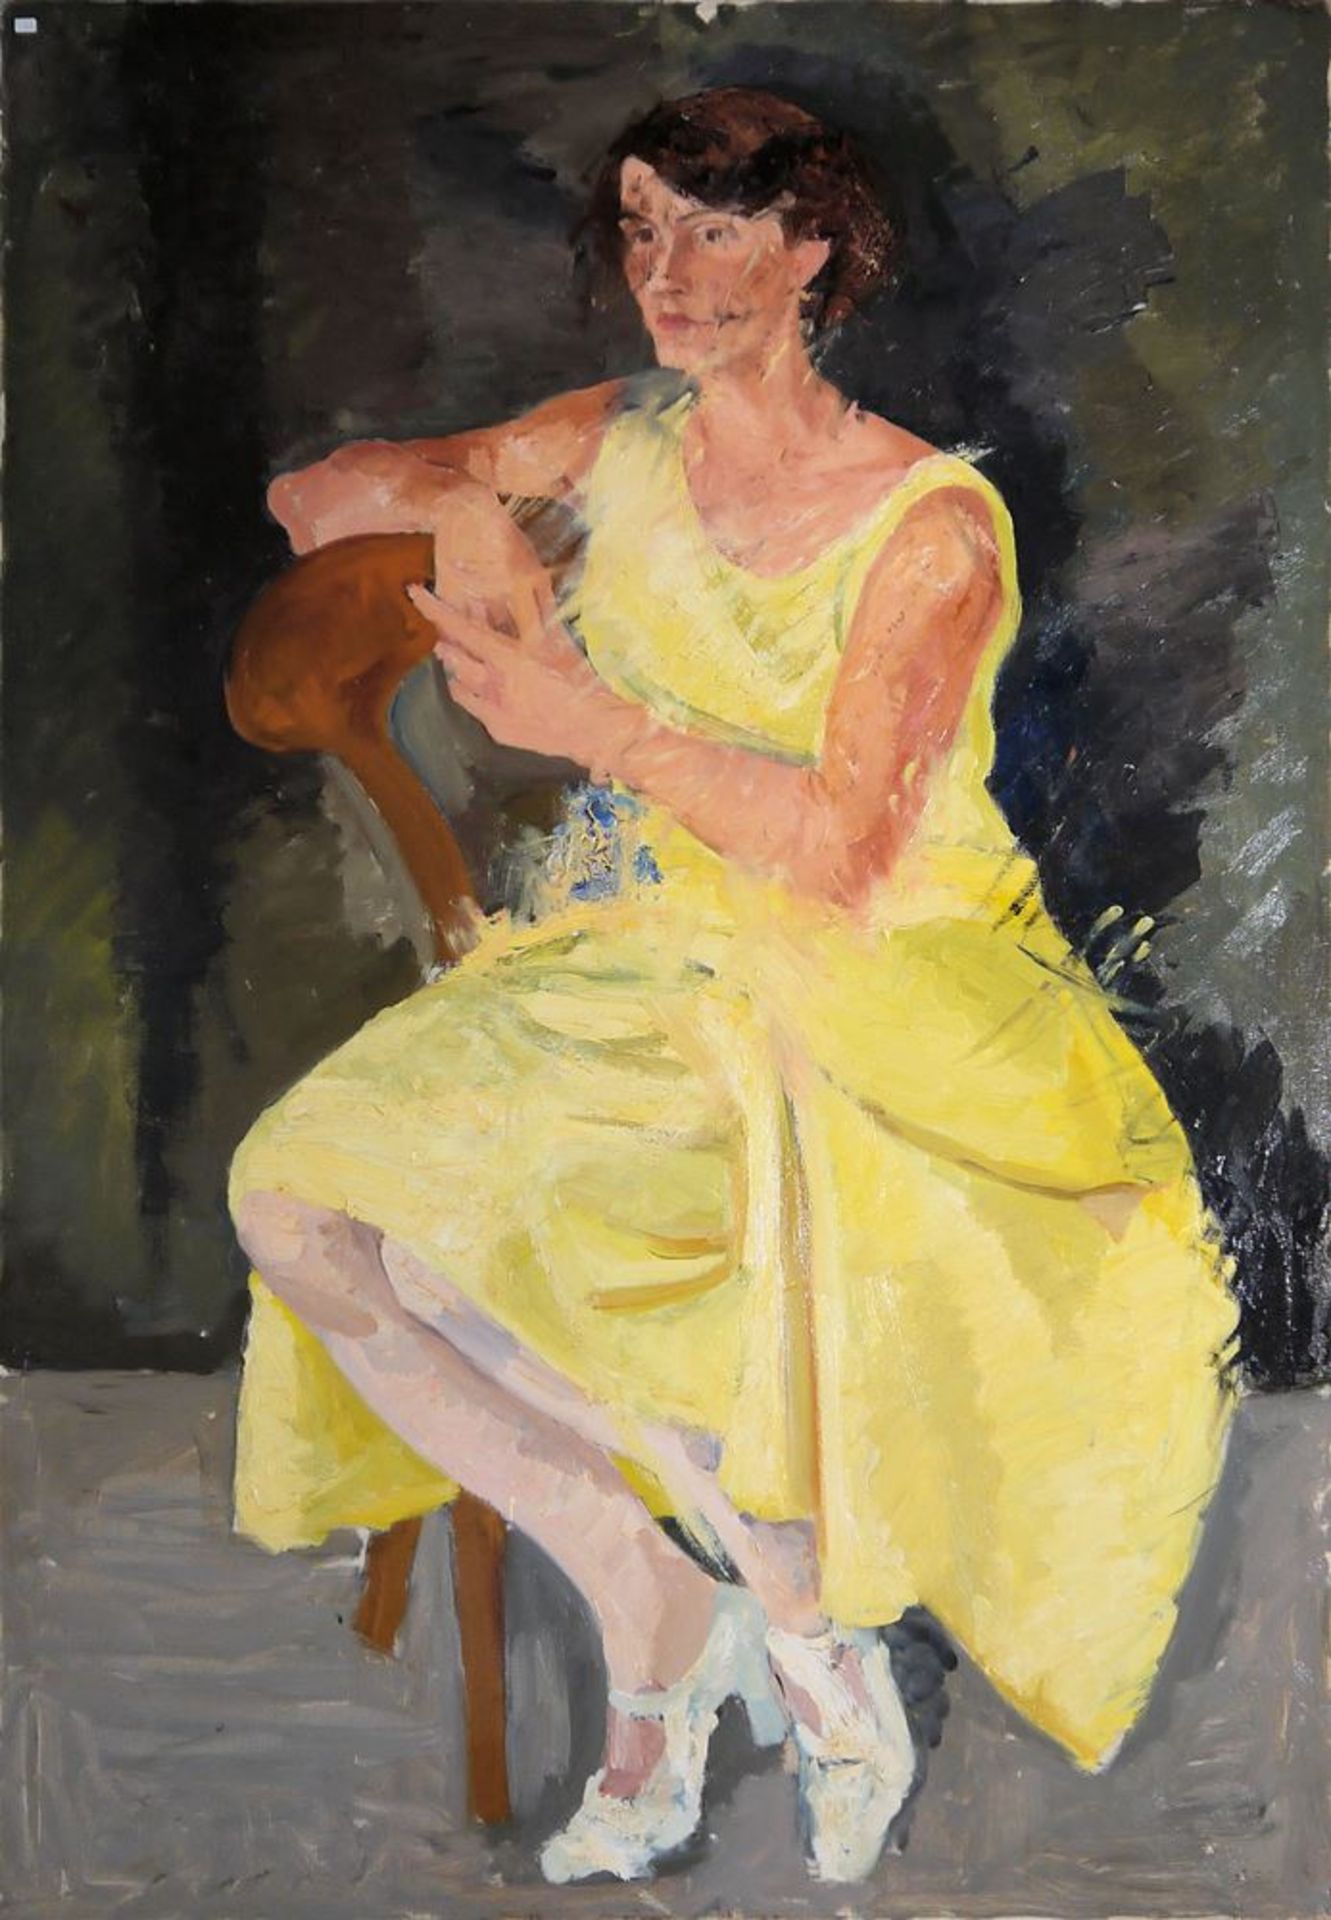 Fritz Feigler, Ganzfigurenportrait einer sitzenden Frau, großes, expressives Ölgemälde, 1920/30 Jah